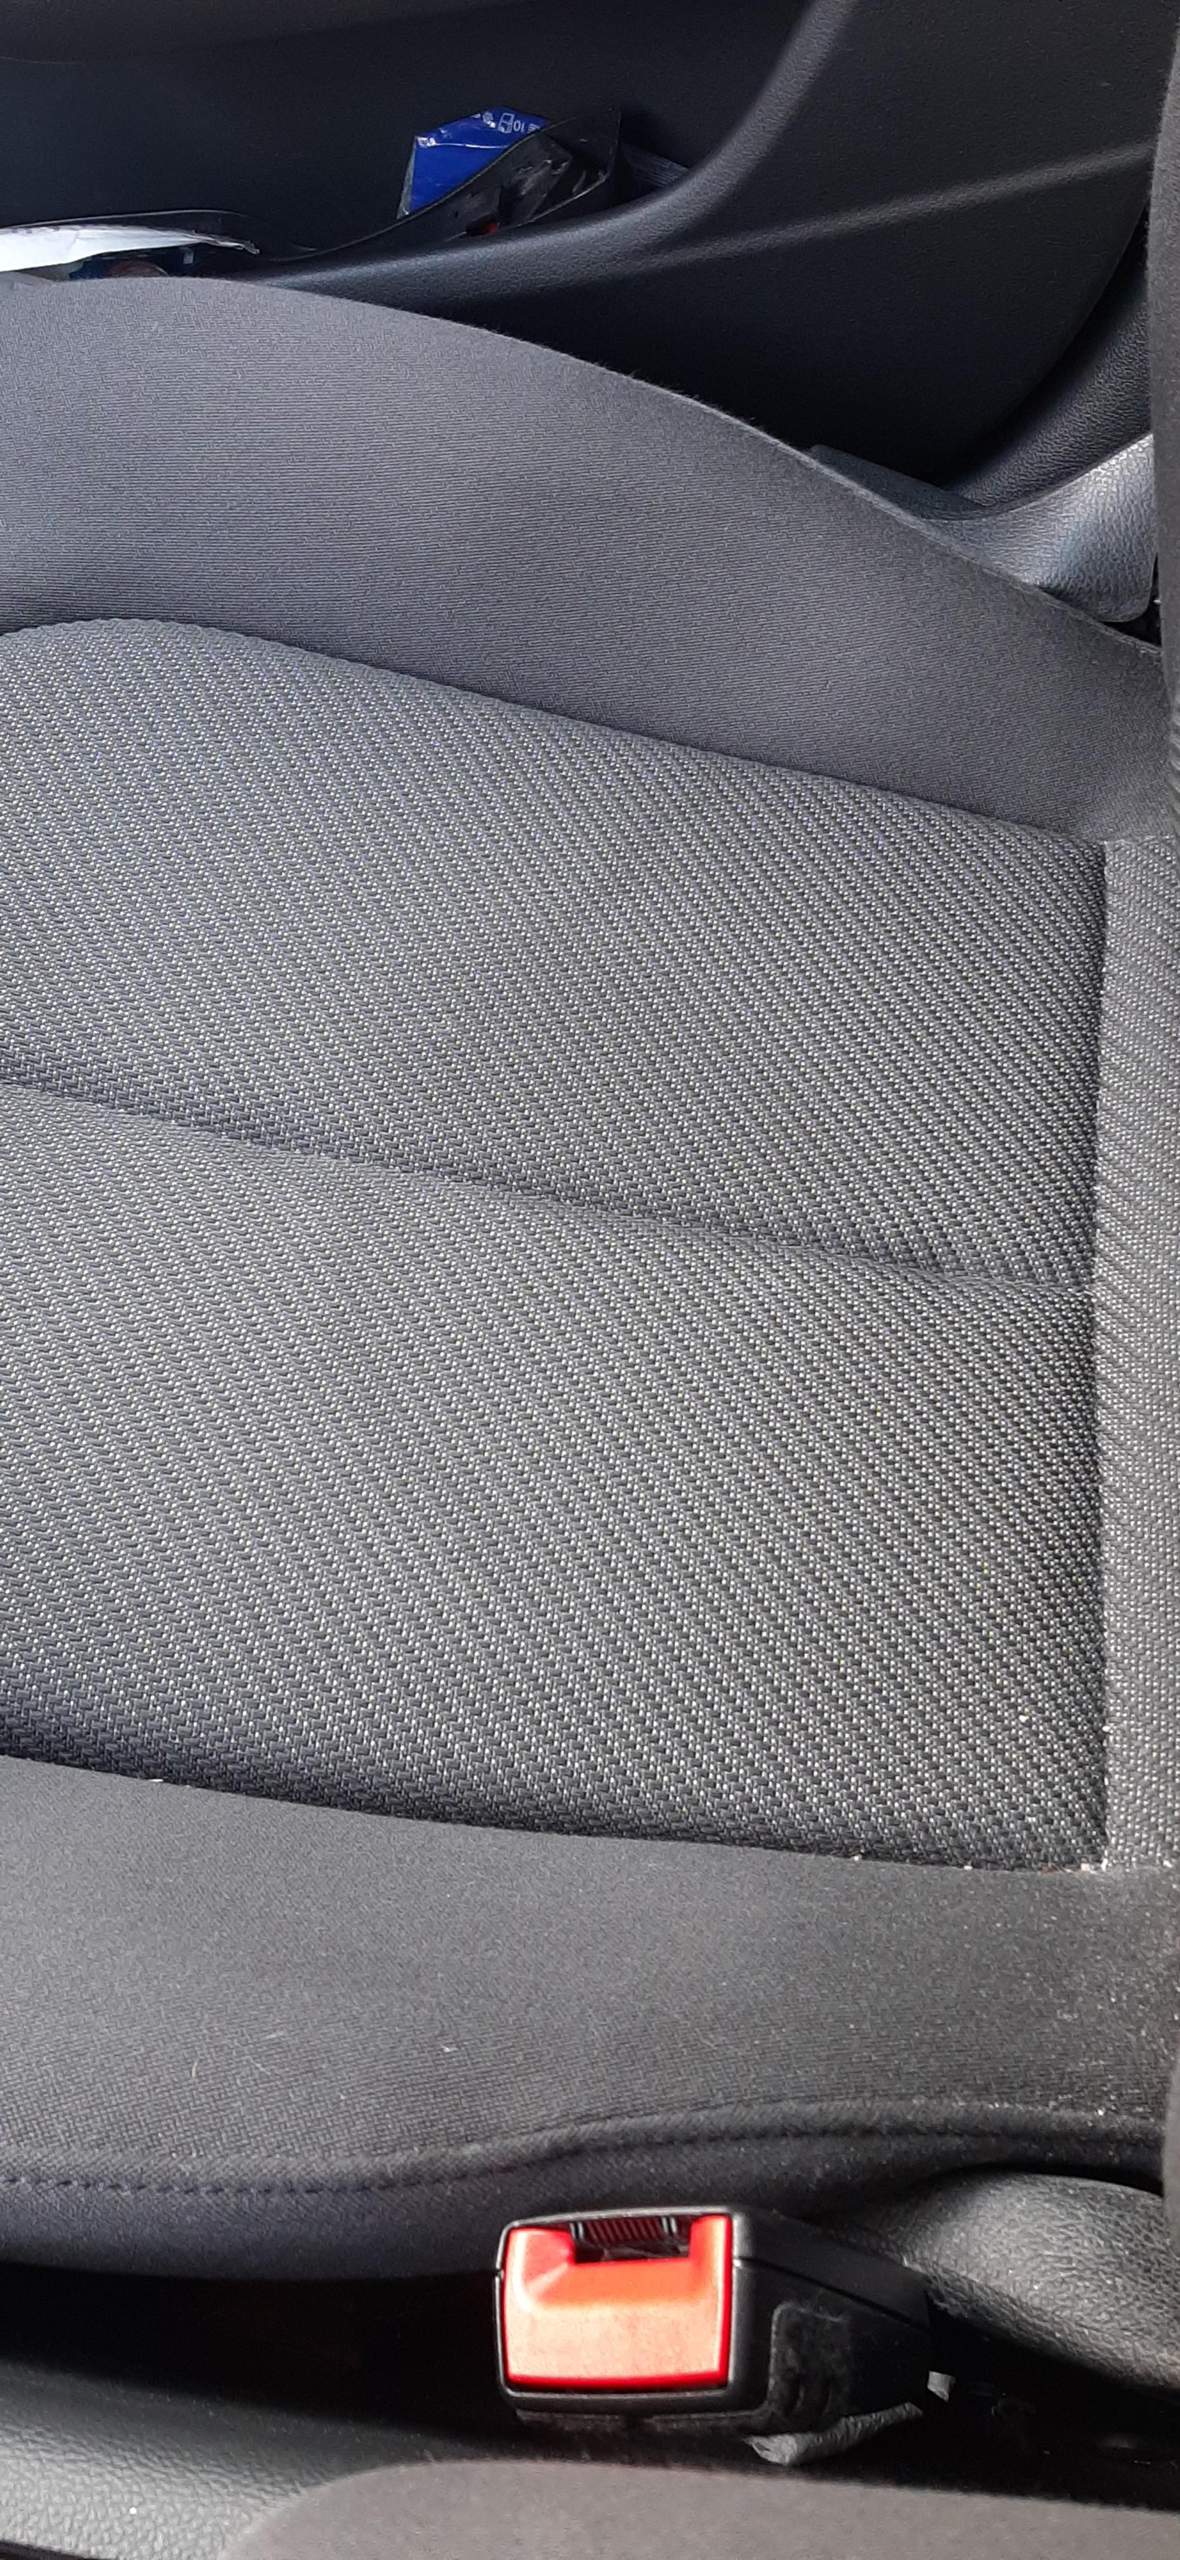 Flecken auf dem Autositz entfernen? (Auto, Haushalt, Reinigung)